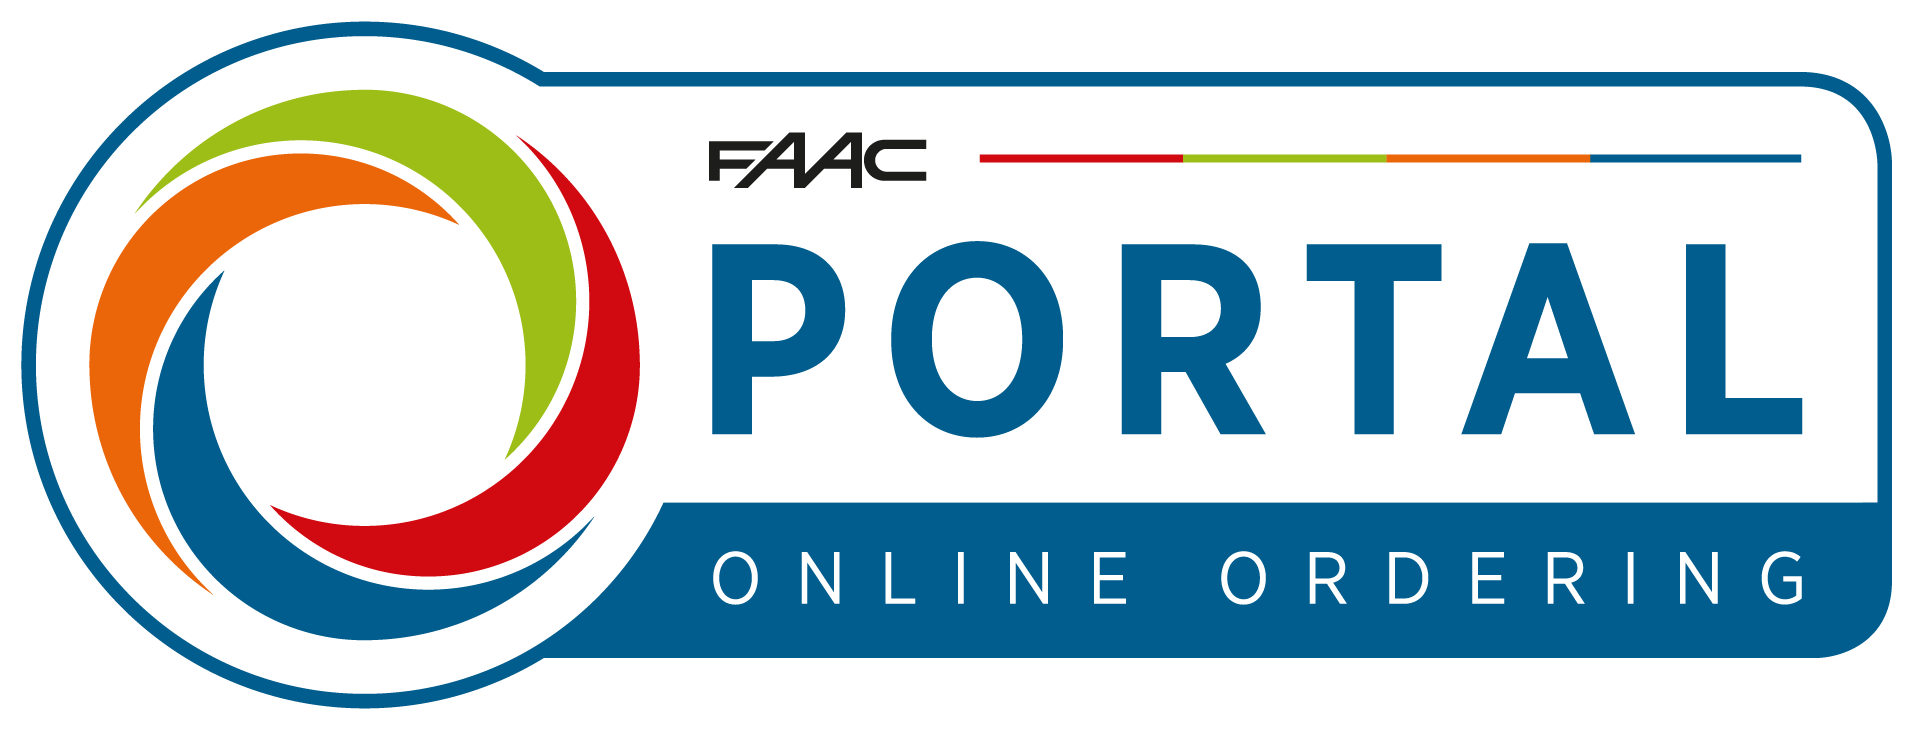 FAAC Partner Portal